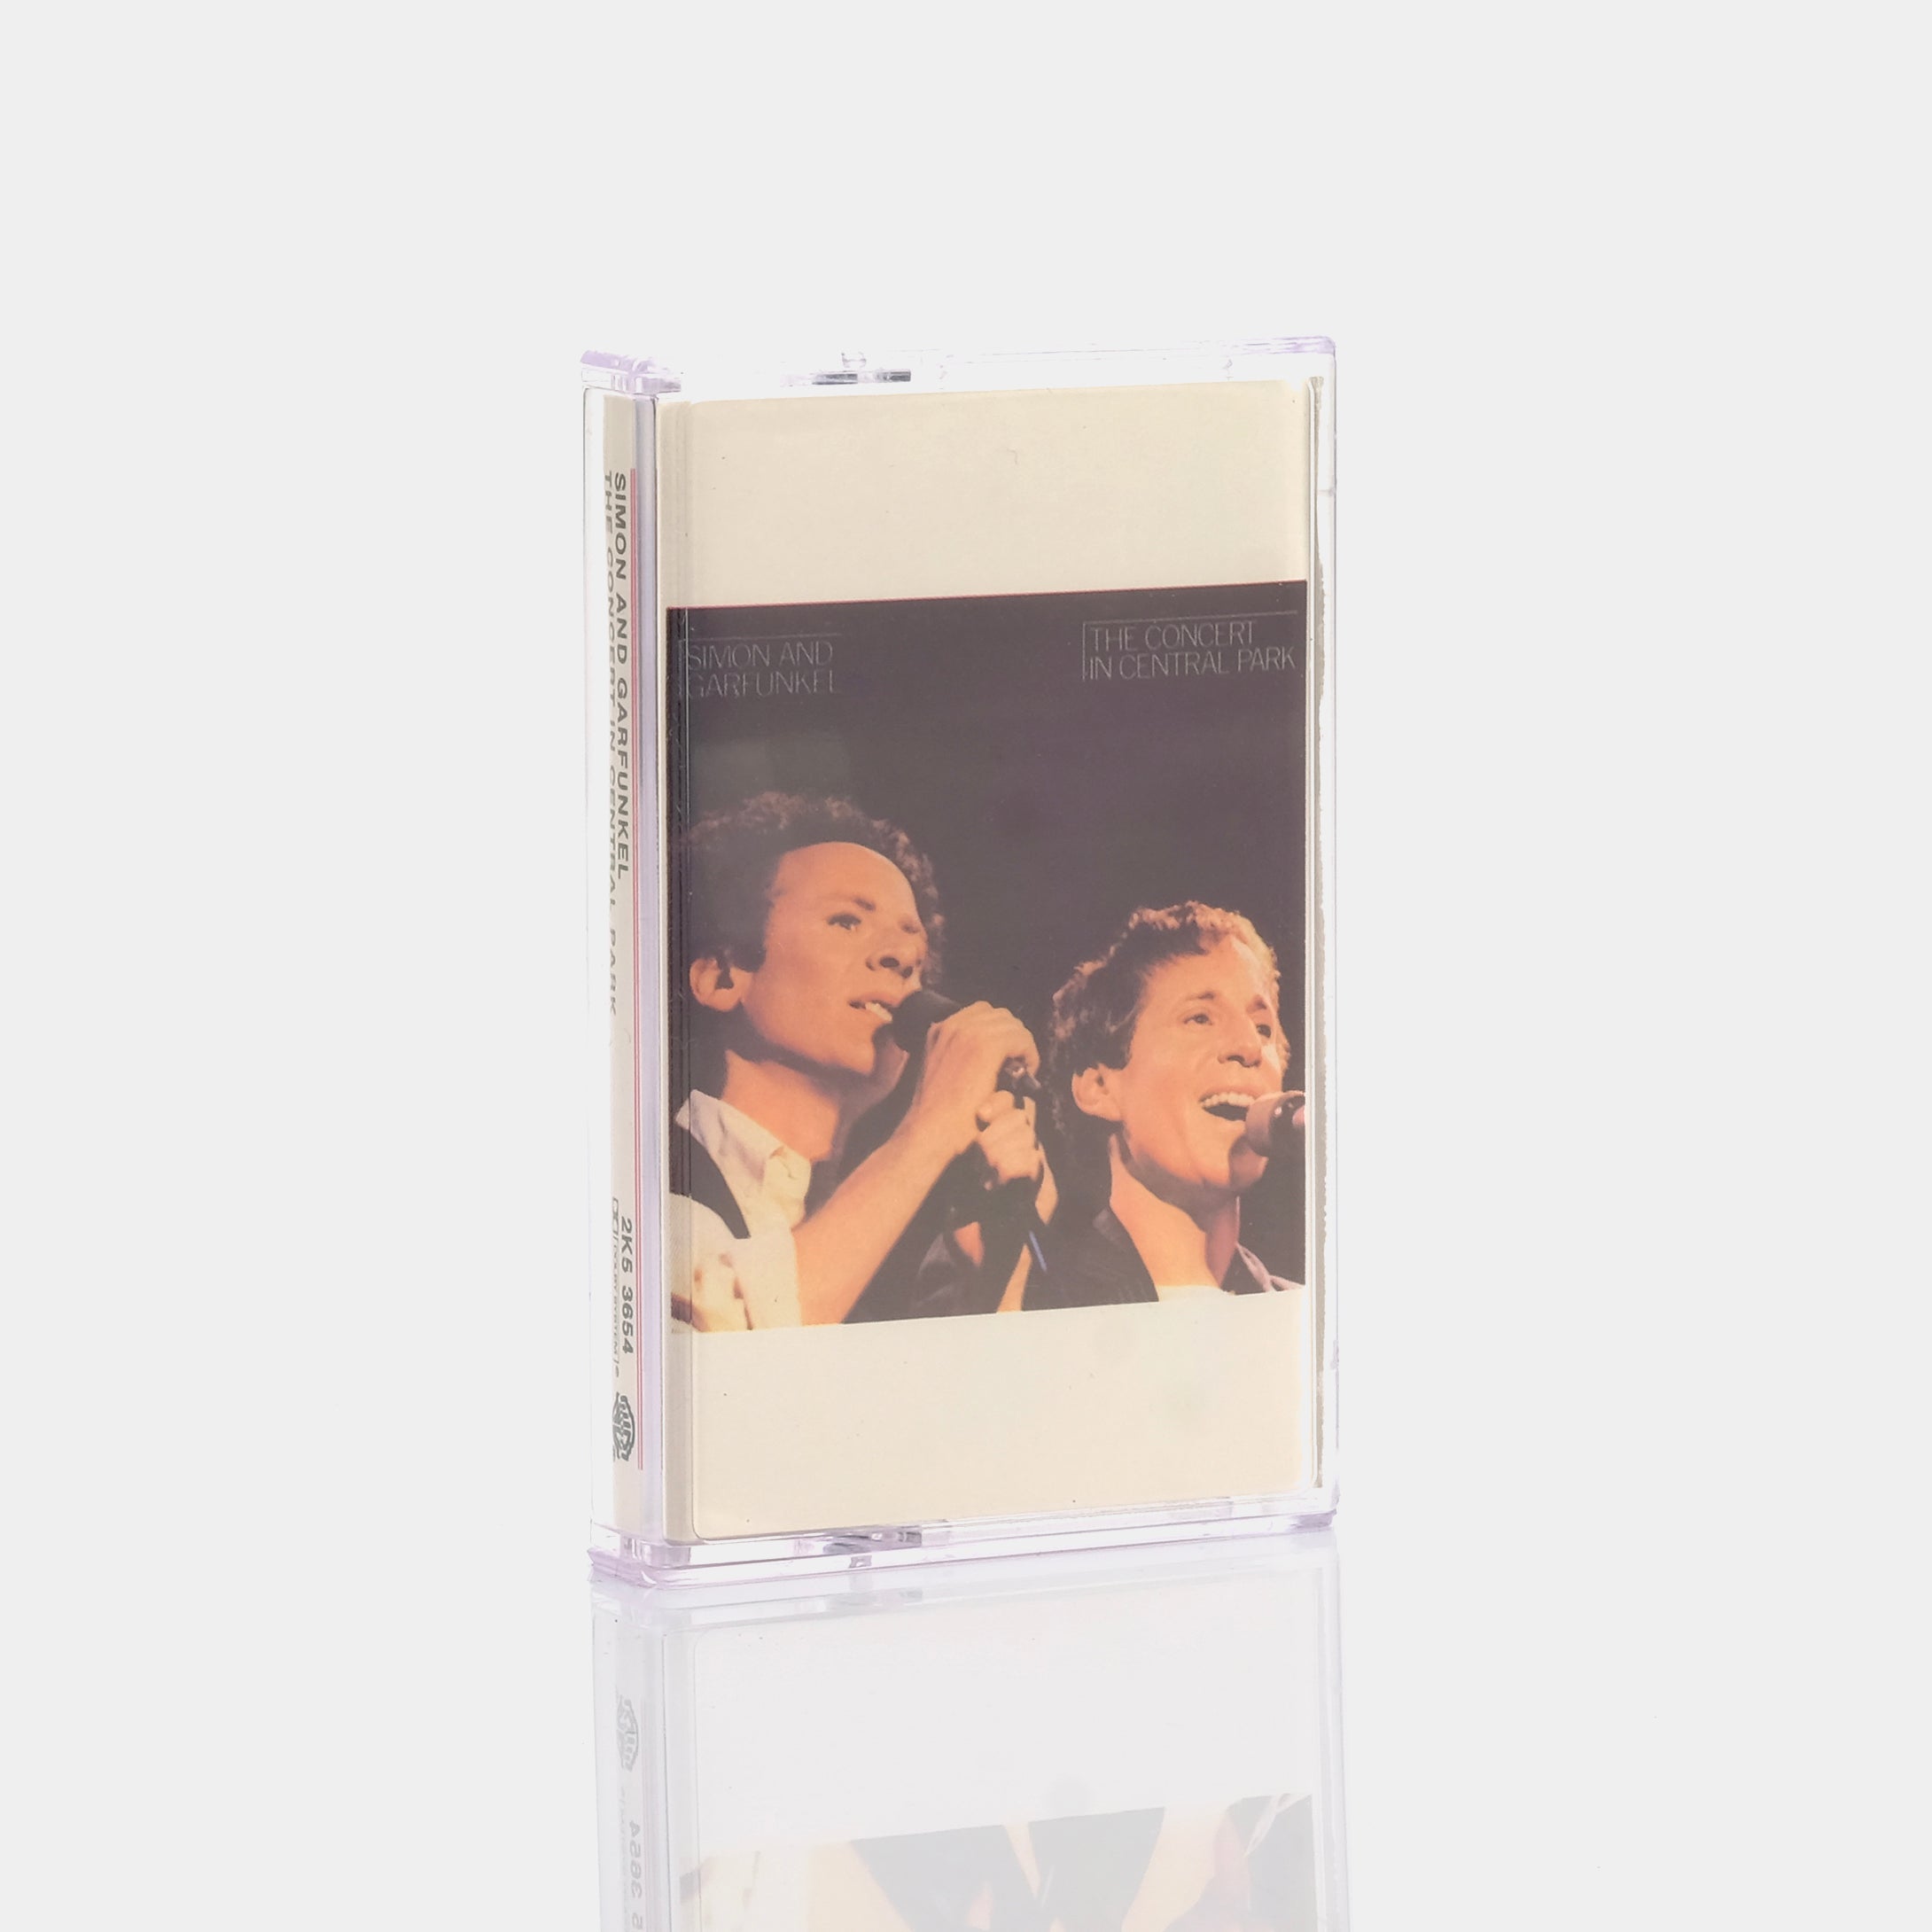 Simon & Garfunkel - The Concert in Central Park Cassette Tape